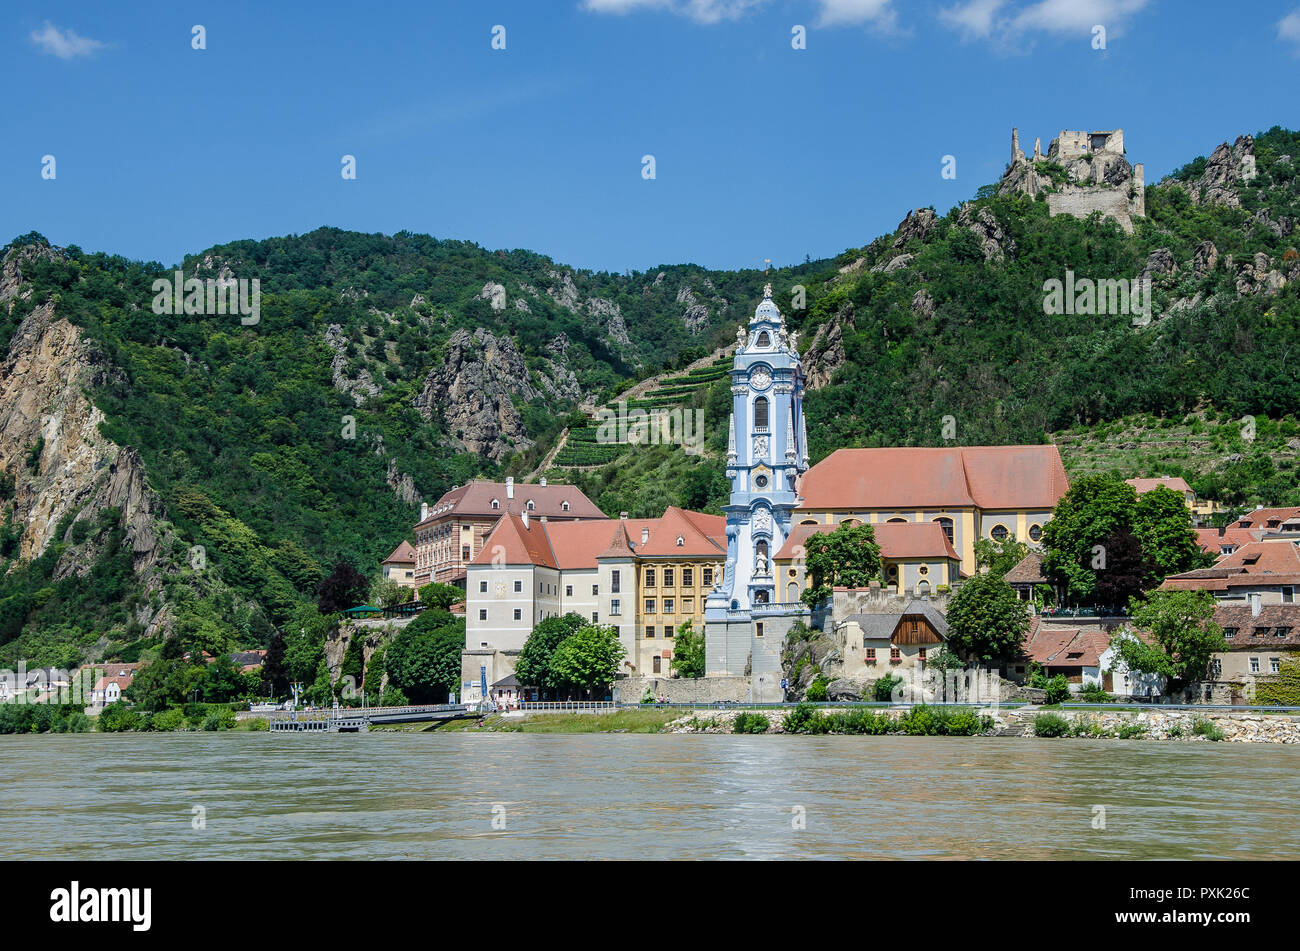 Dürnstein ist eine kleine Stadt an der Donau im Bezirk Krems-Land, in dem österreichischen Bundeslandes Niederösterreich. Stockfoto